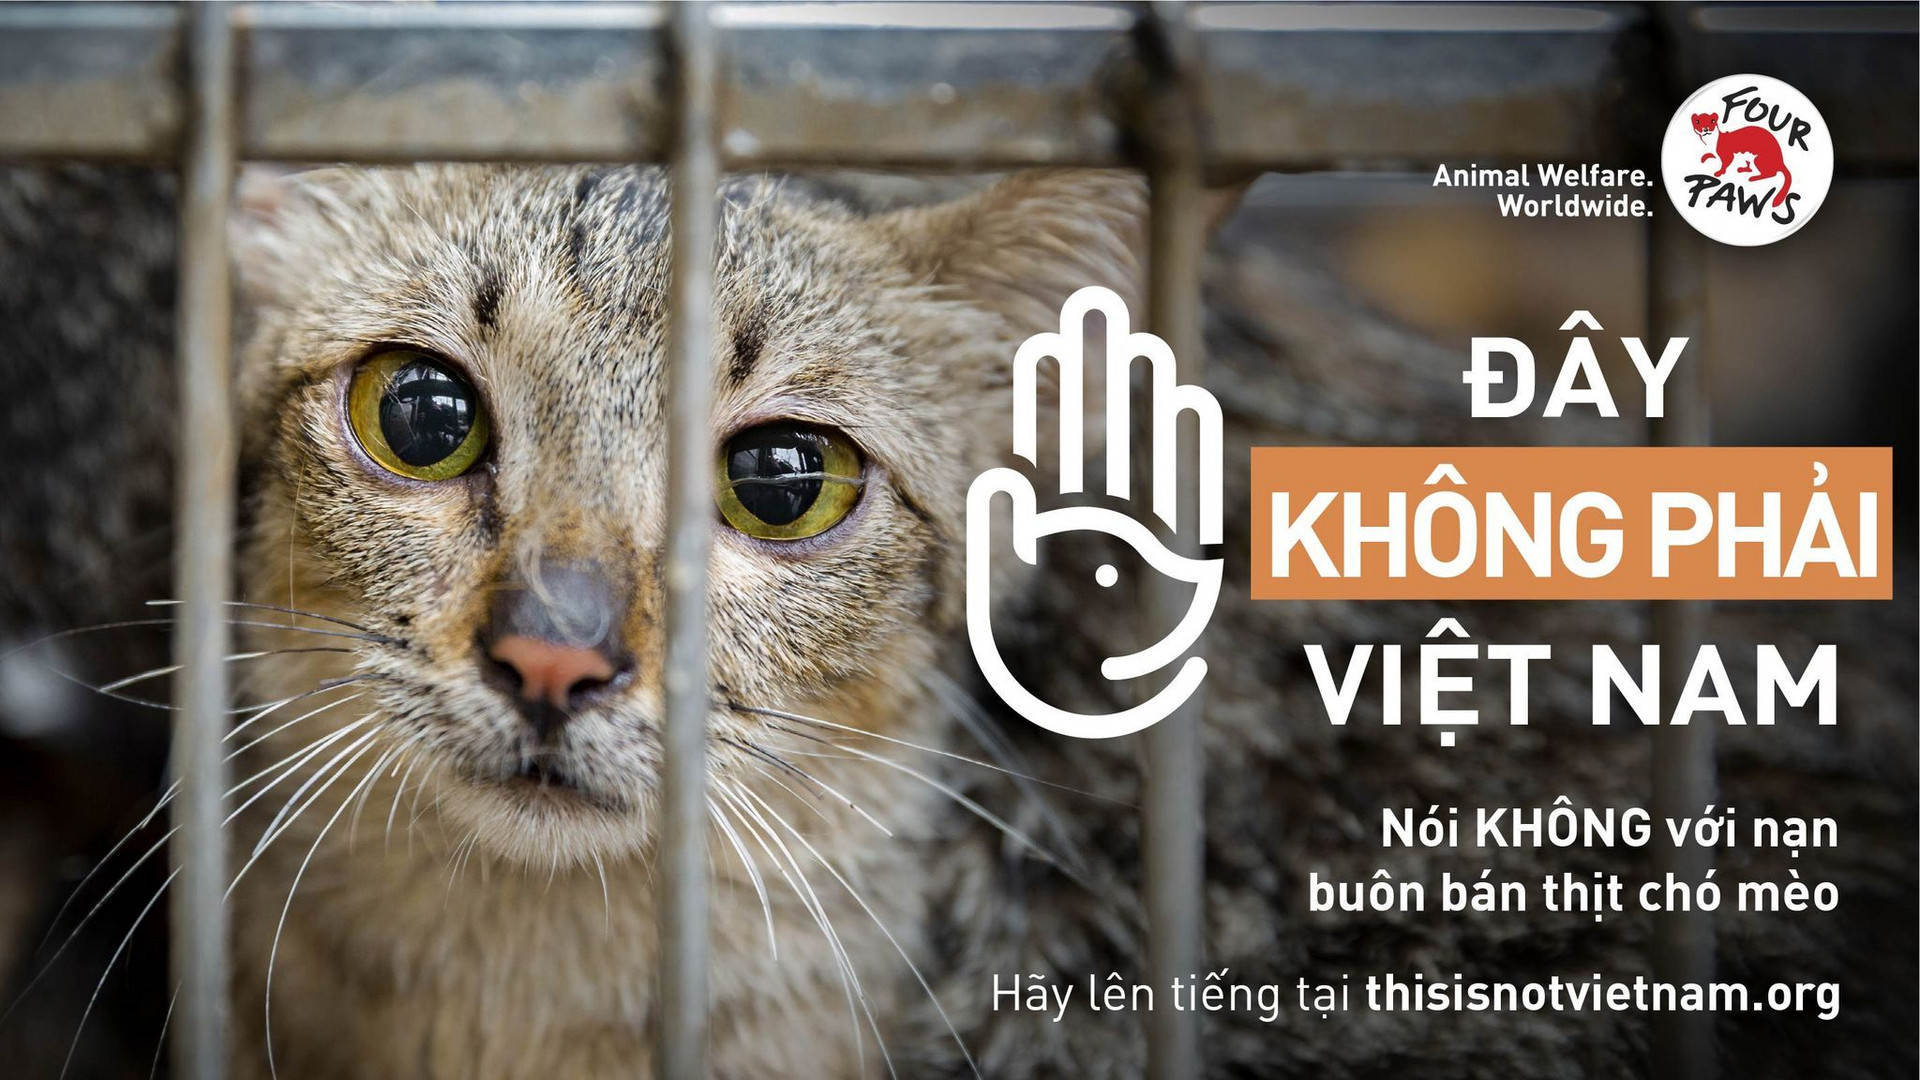 Phát động chiến dịch chấm dứt nạn buôn bán chó, mèo tại Việt Nam - 2